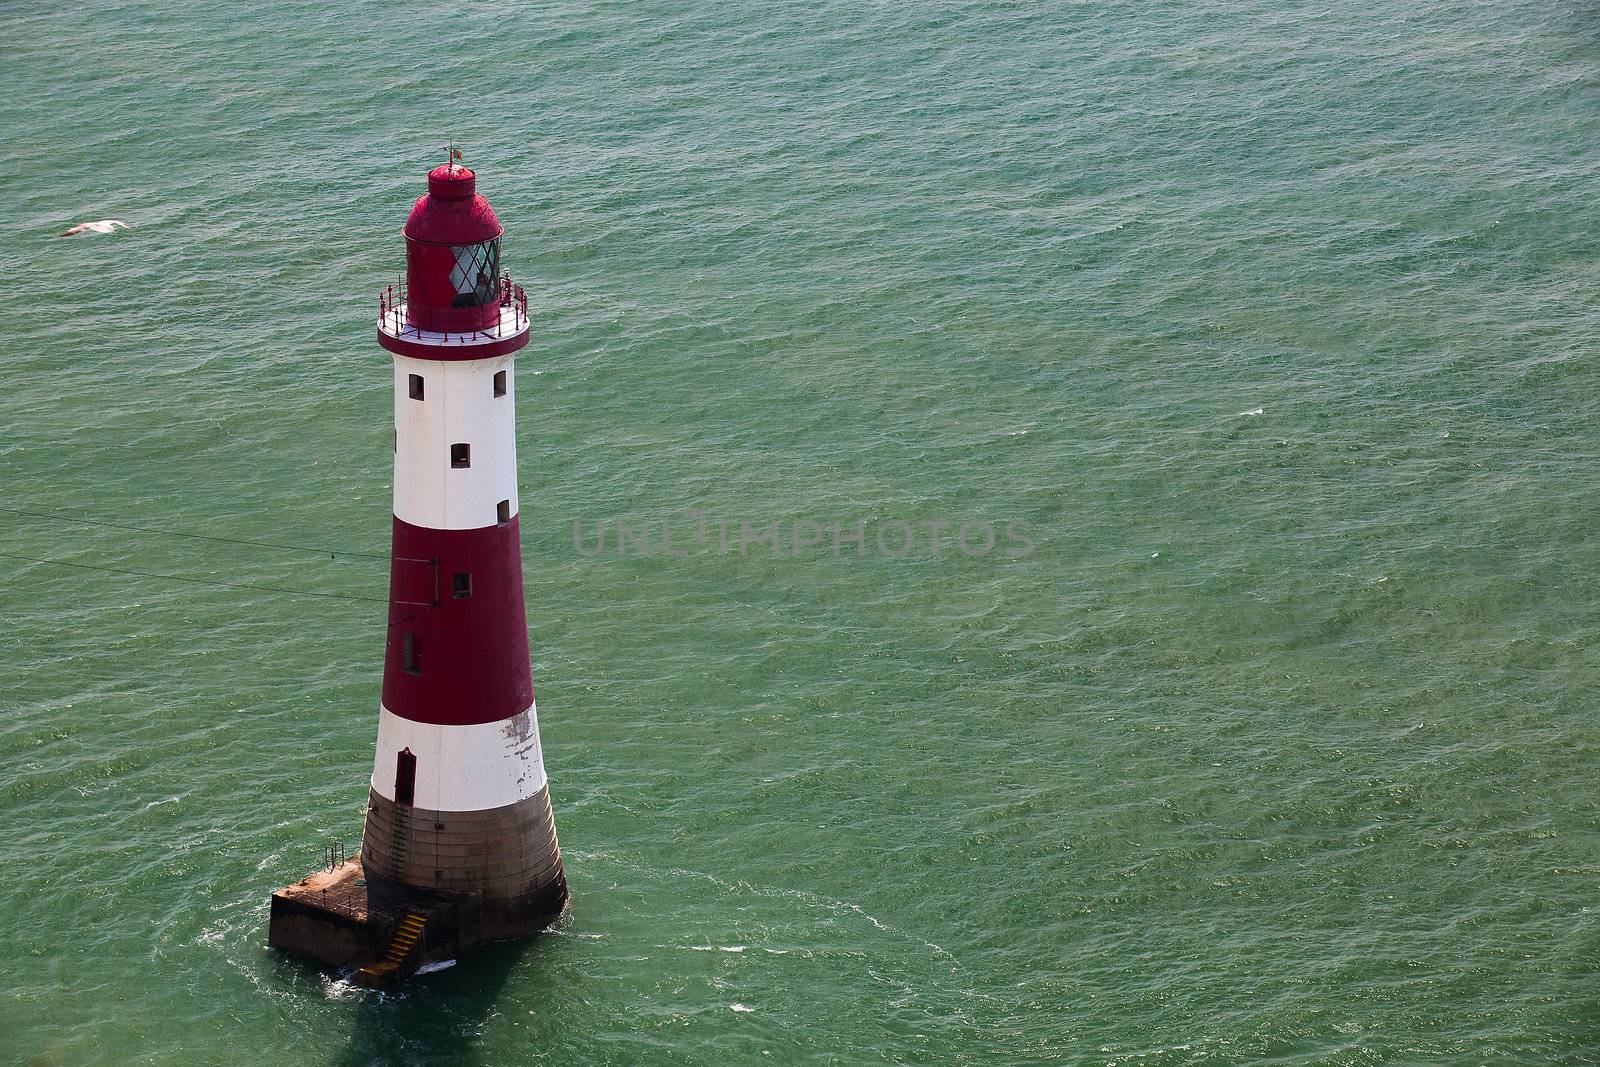 The famous Beachy Head lighthouse